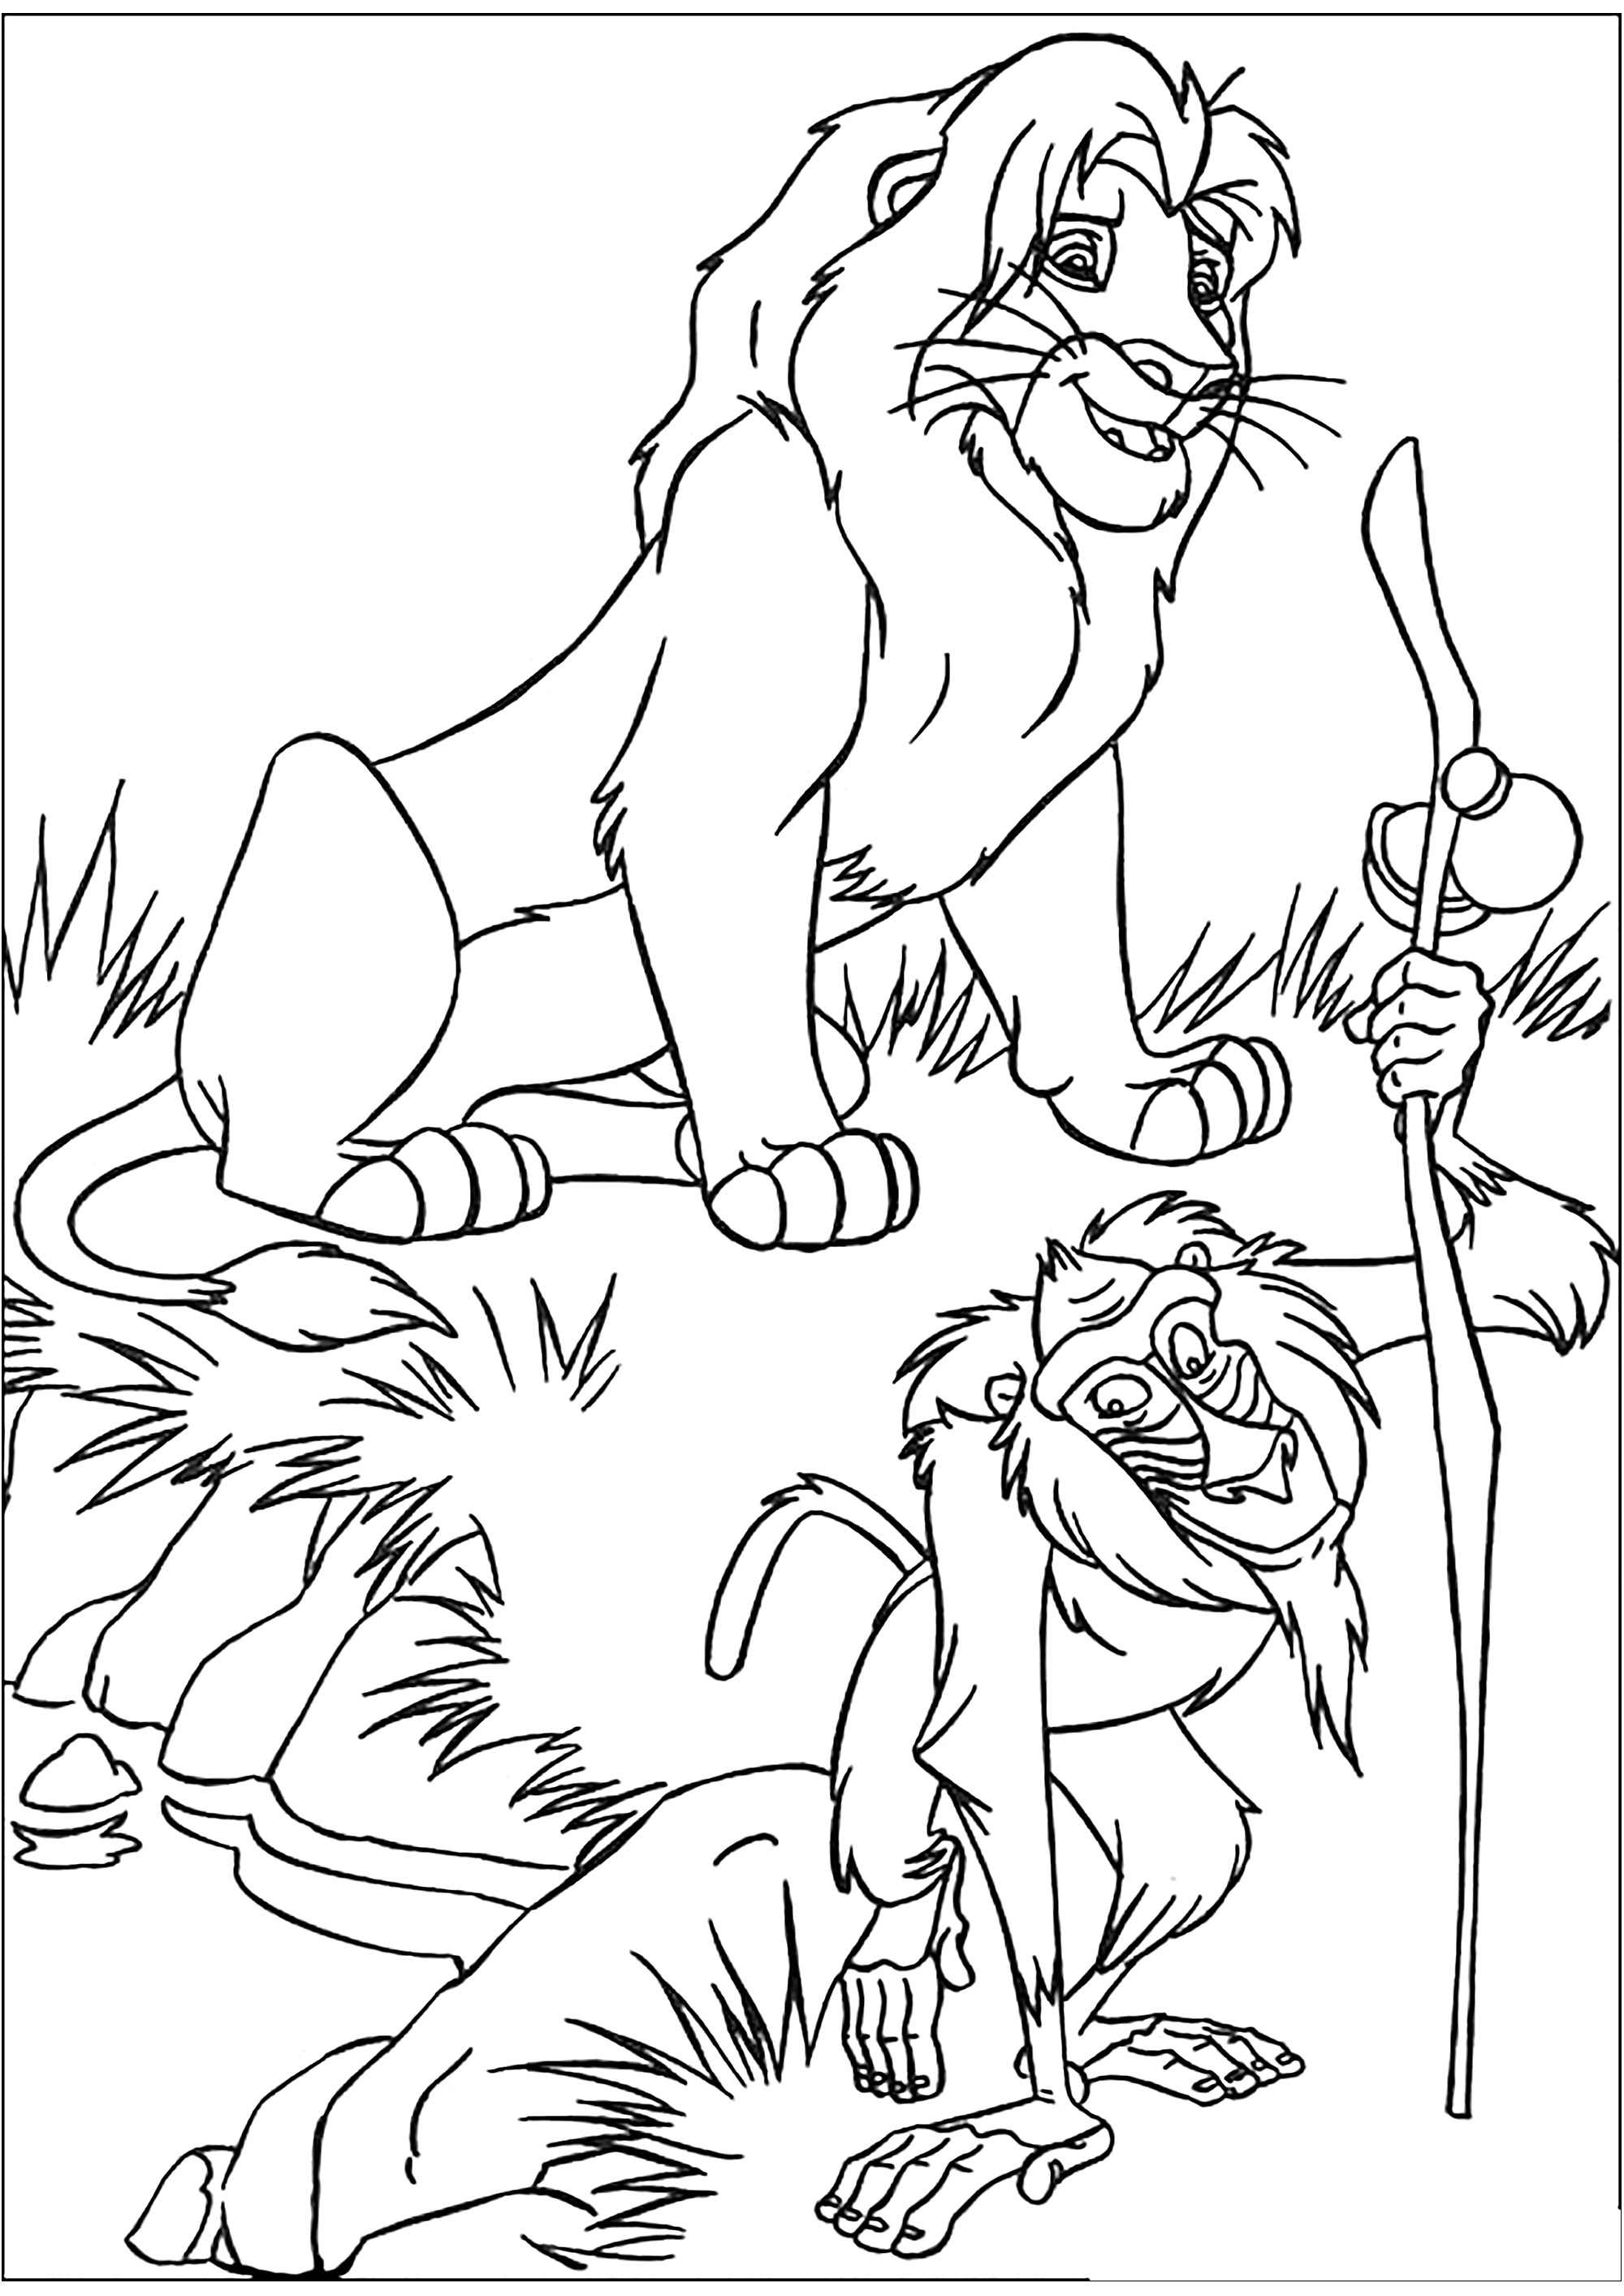 The Lion King: Simba and Rafiki